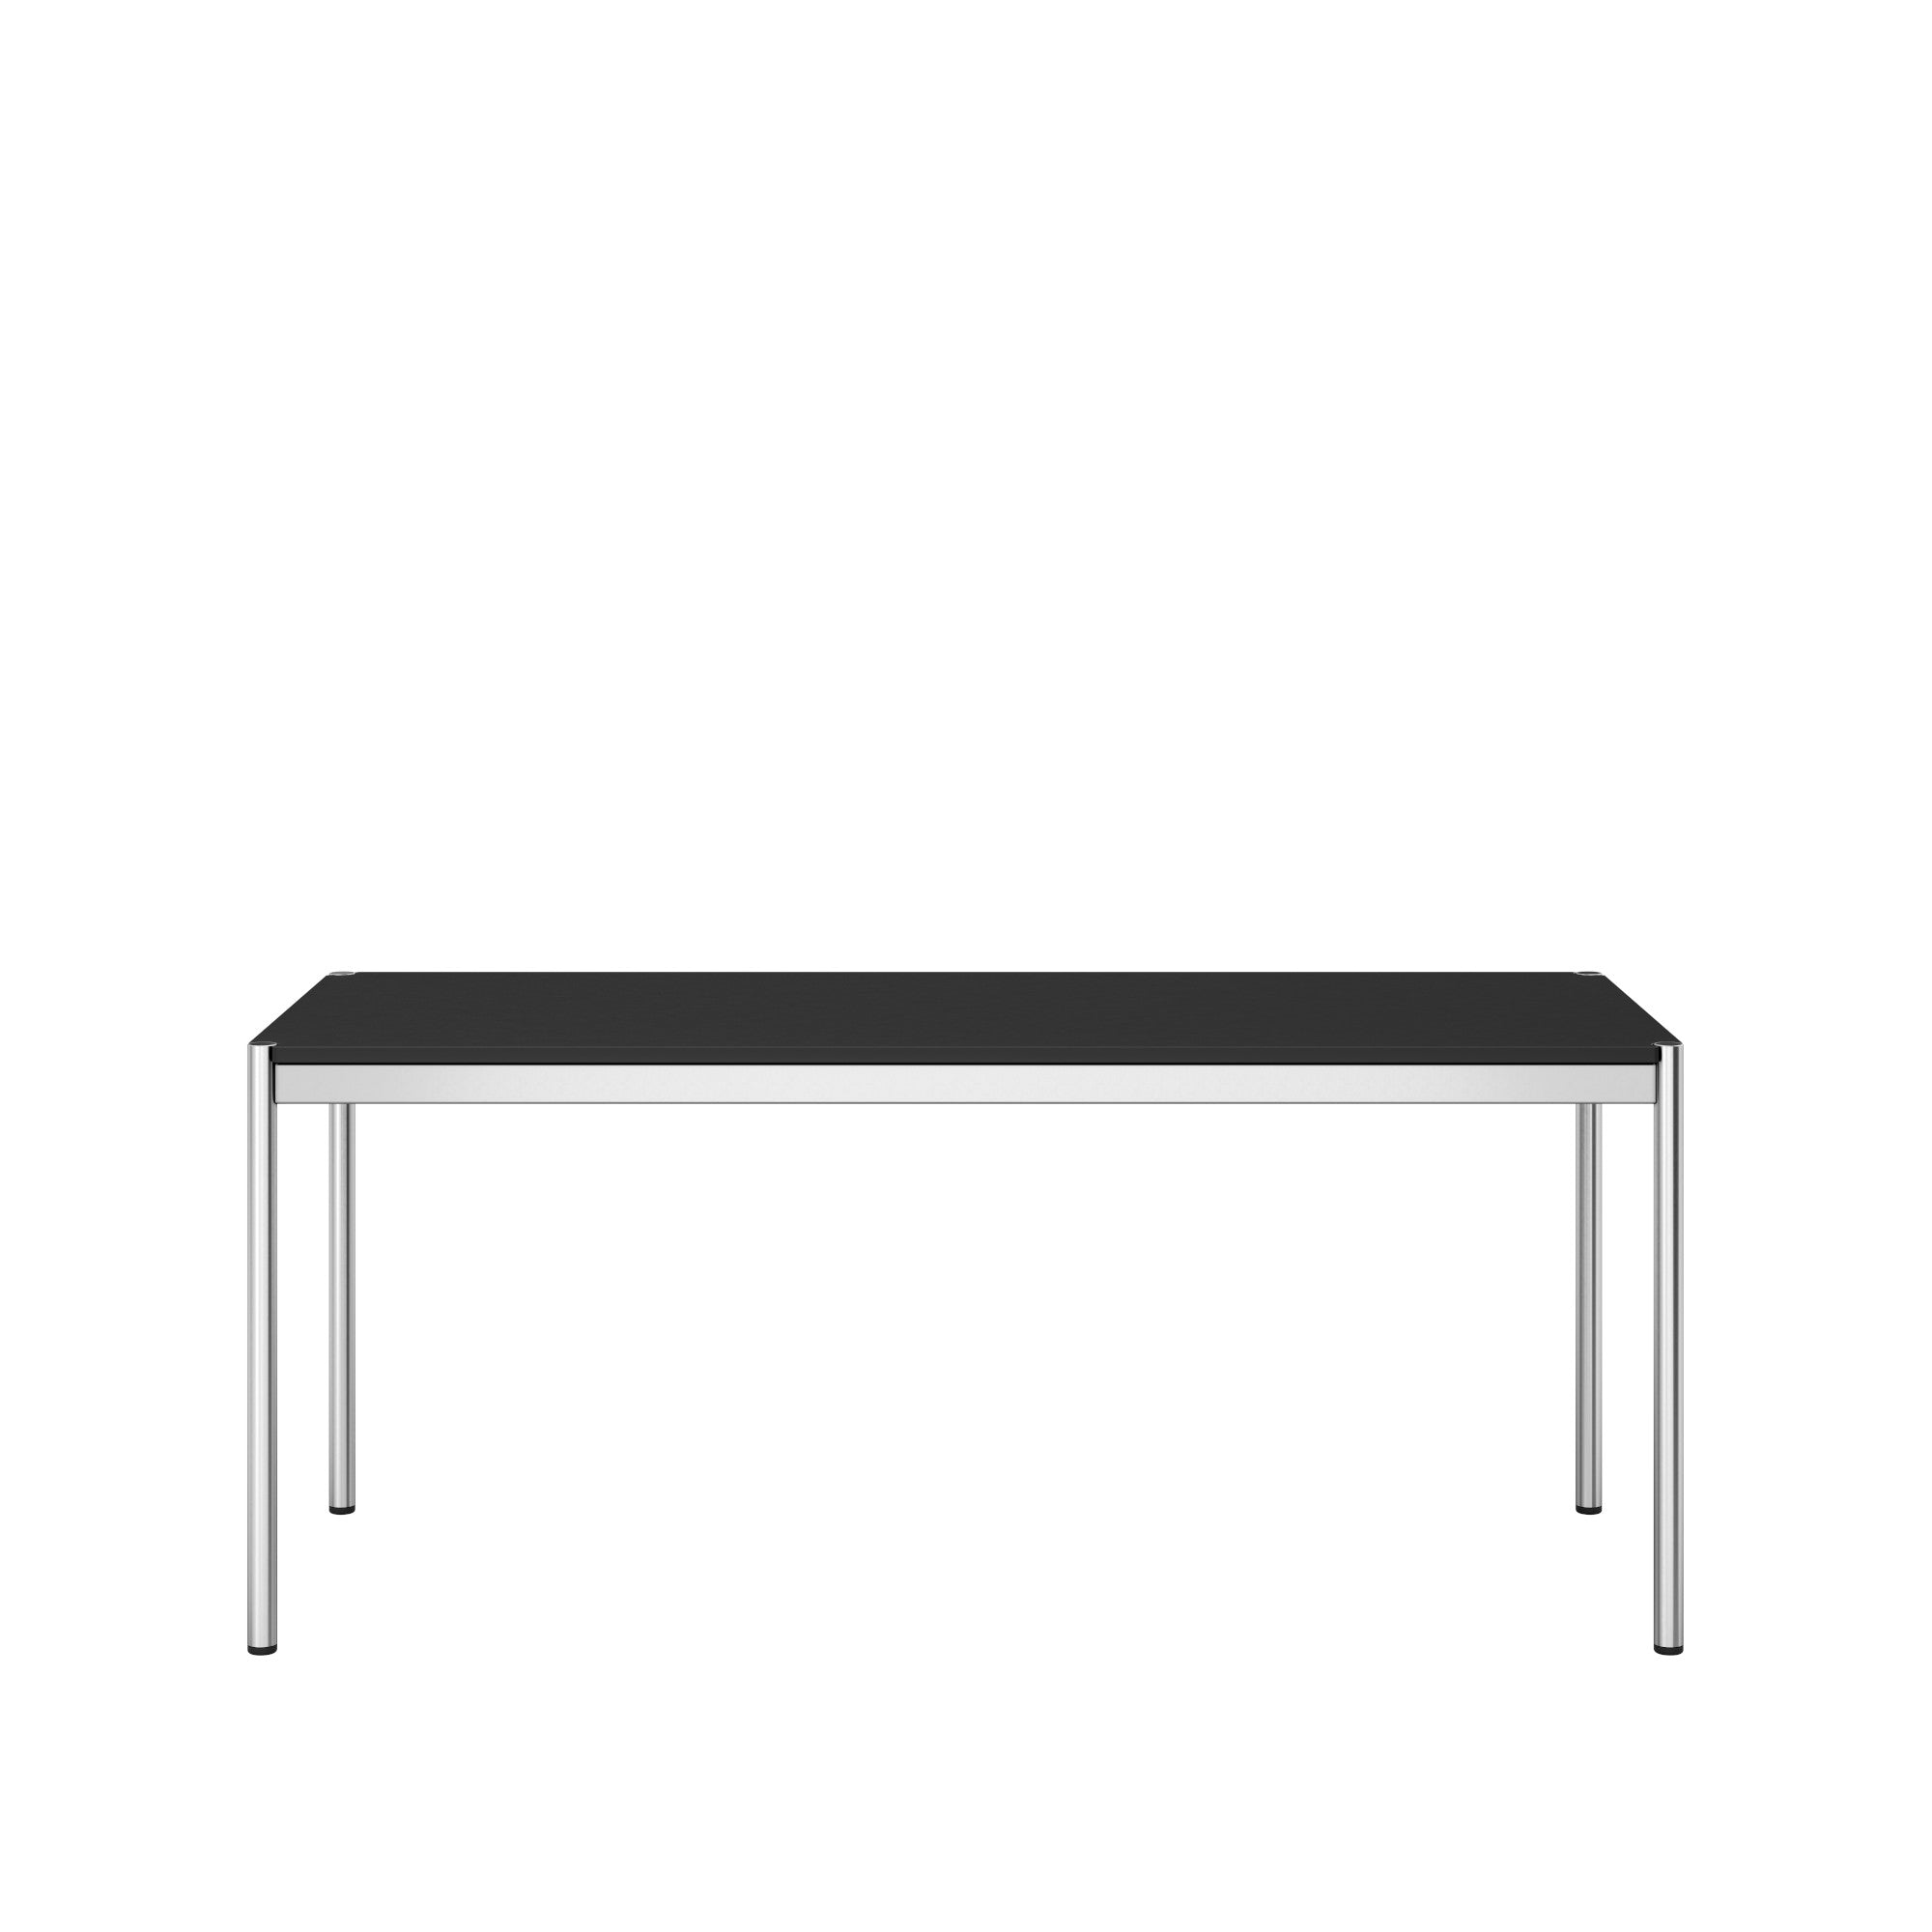 USM Haller table 1750mm (T69)